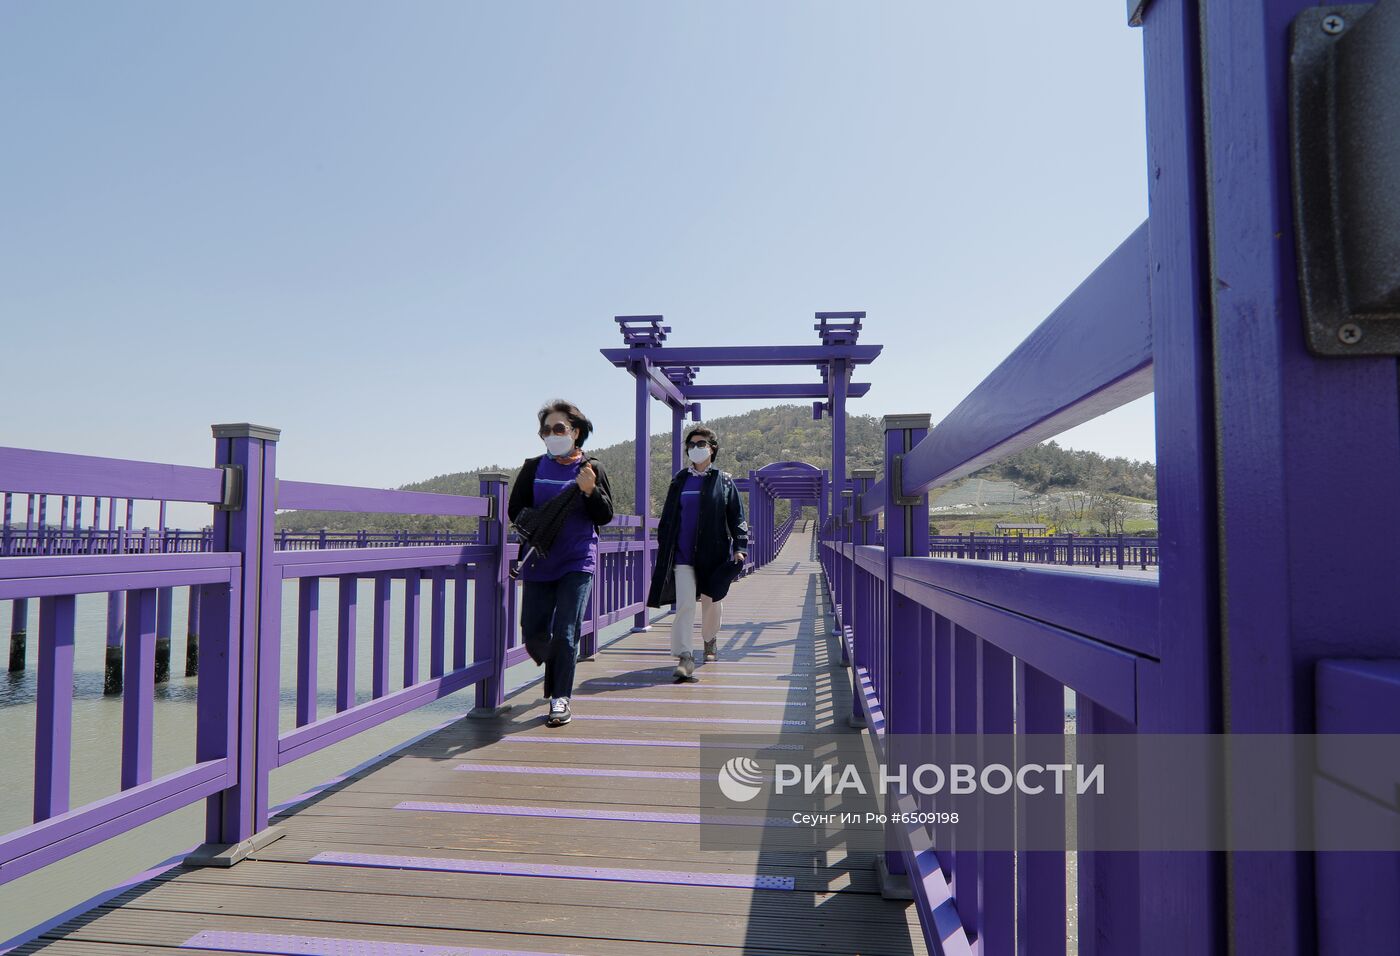 Пурпурный мост в Южной Корее